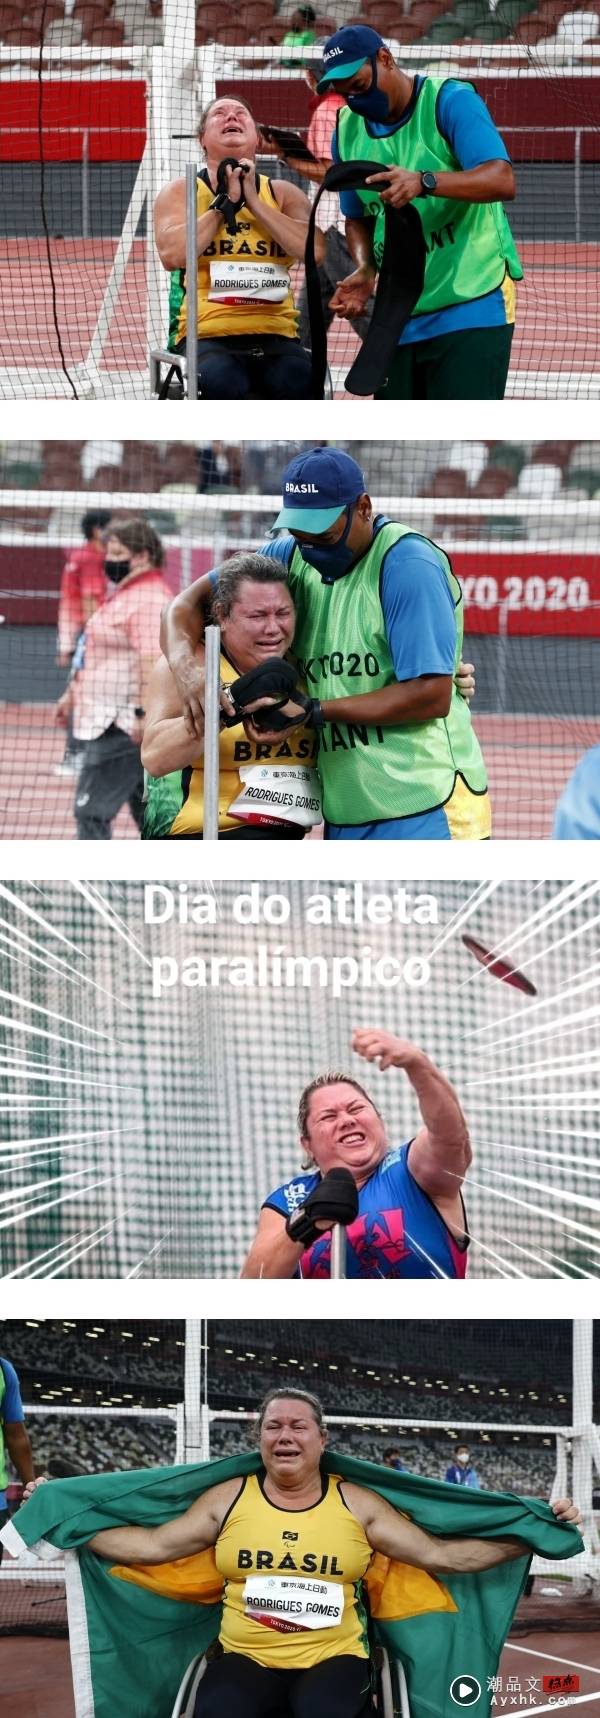 【东京残奥】生命不设限！56岁巴西选手Gomes坐轮椅抛铁饼…连破世界纪录夺金！ 娱乐资讯 图3张